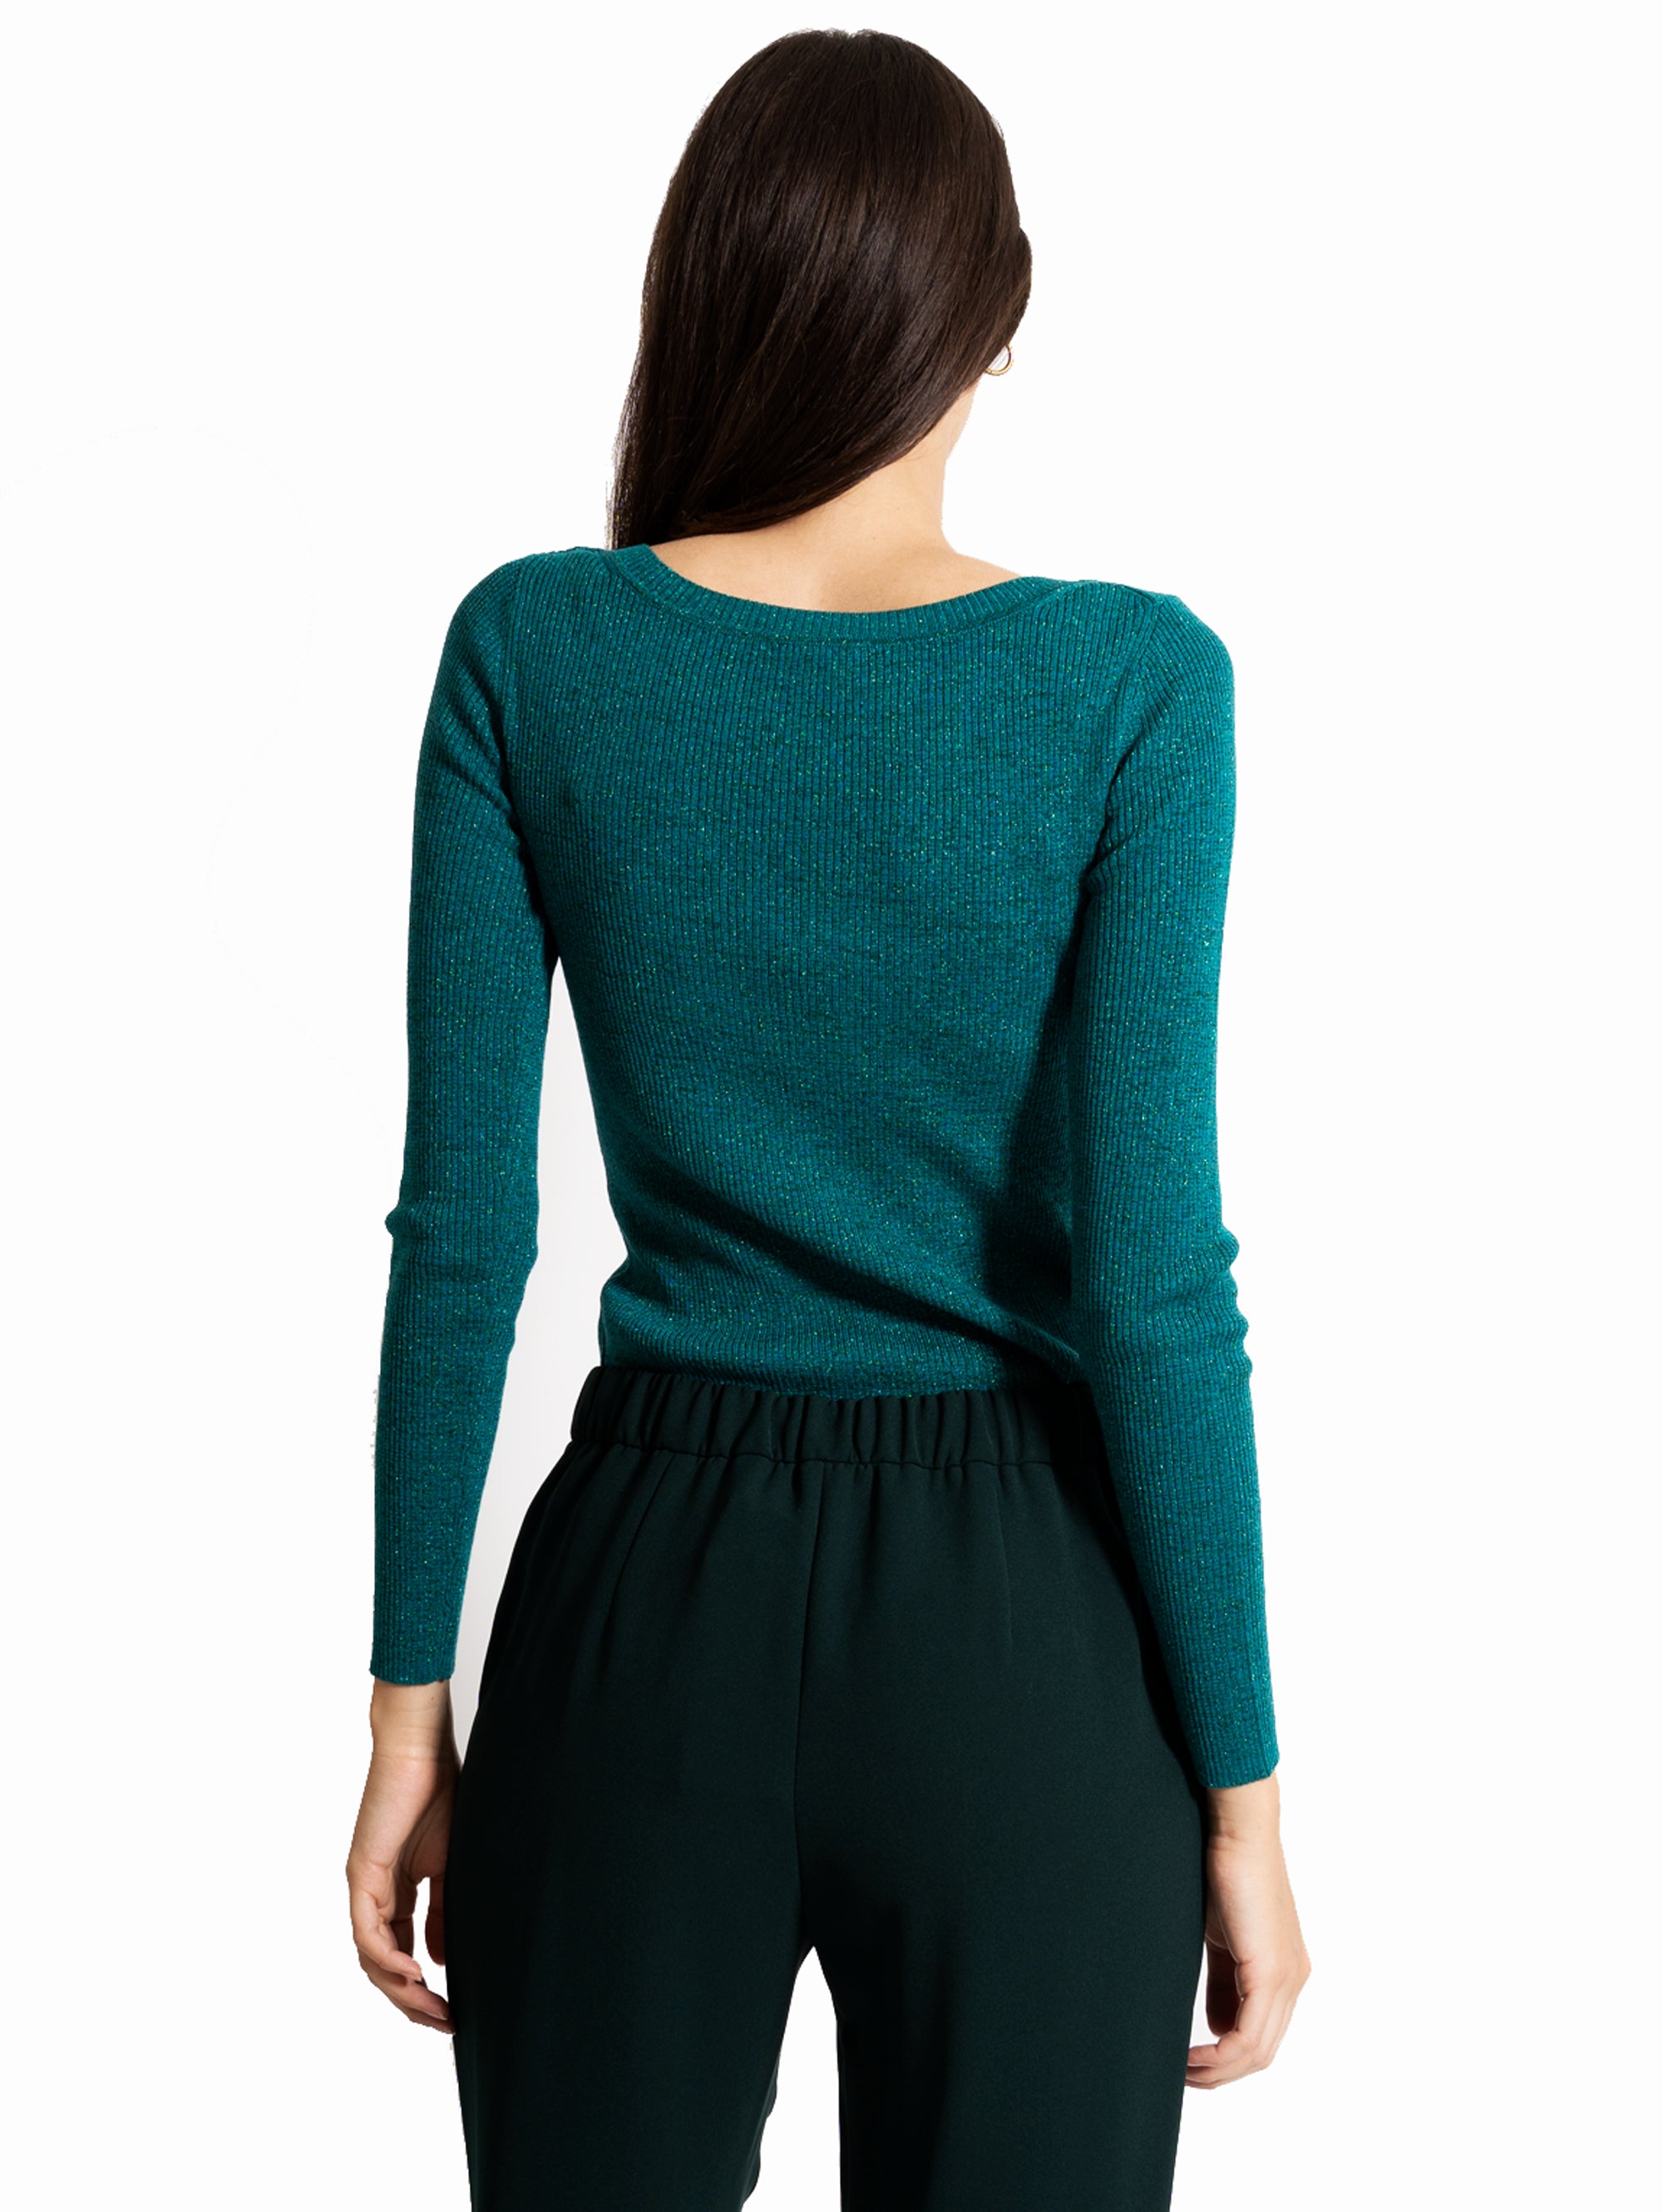 Grüner Lurex-Pullover mit V-Ausschnitt